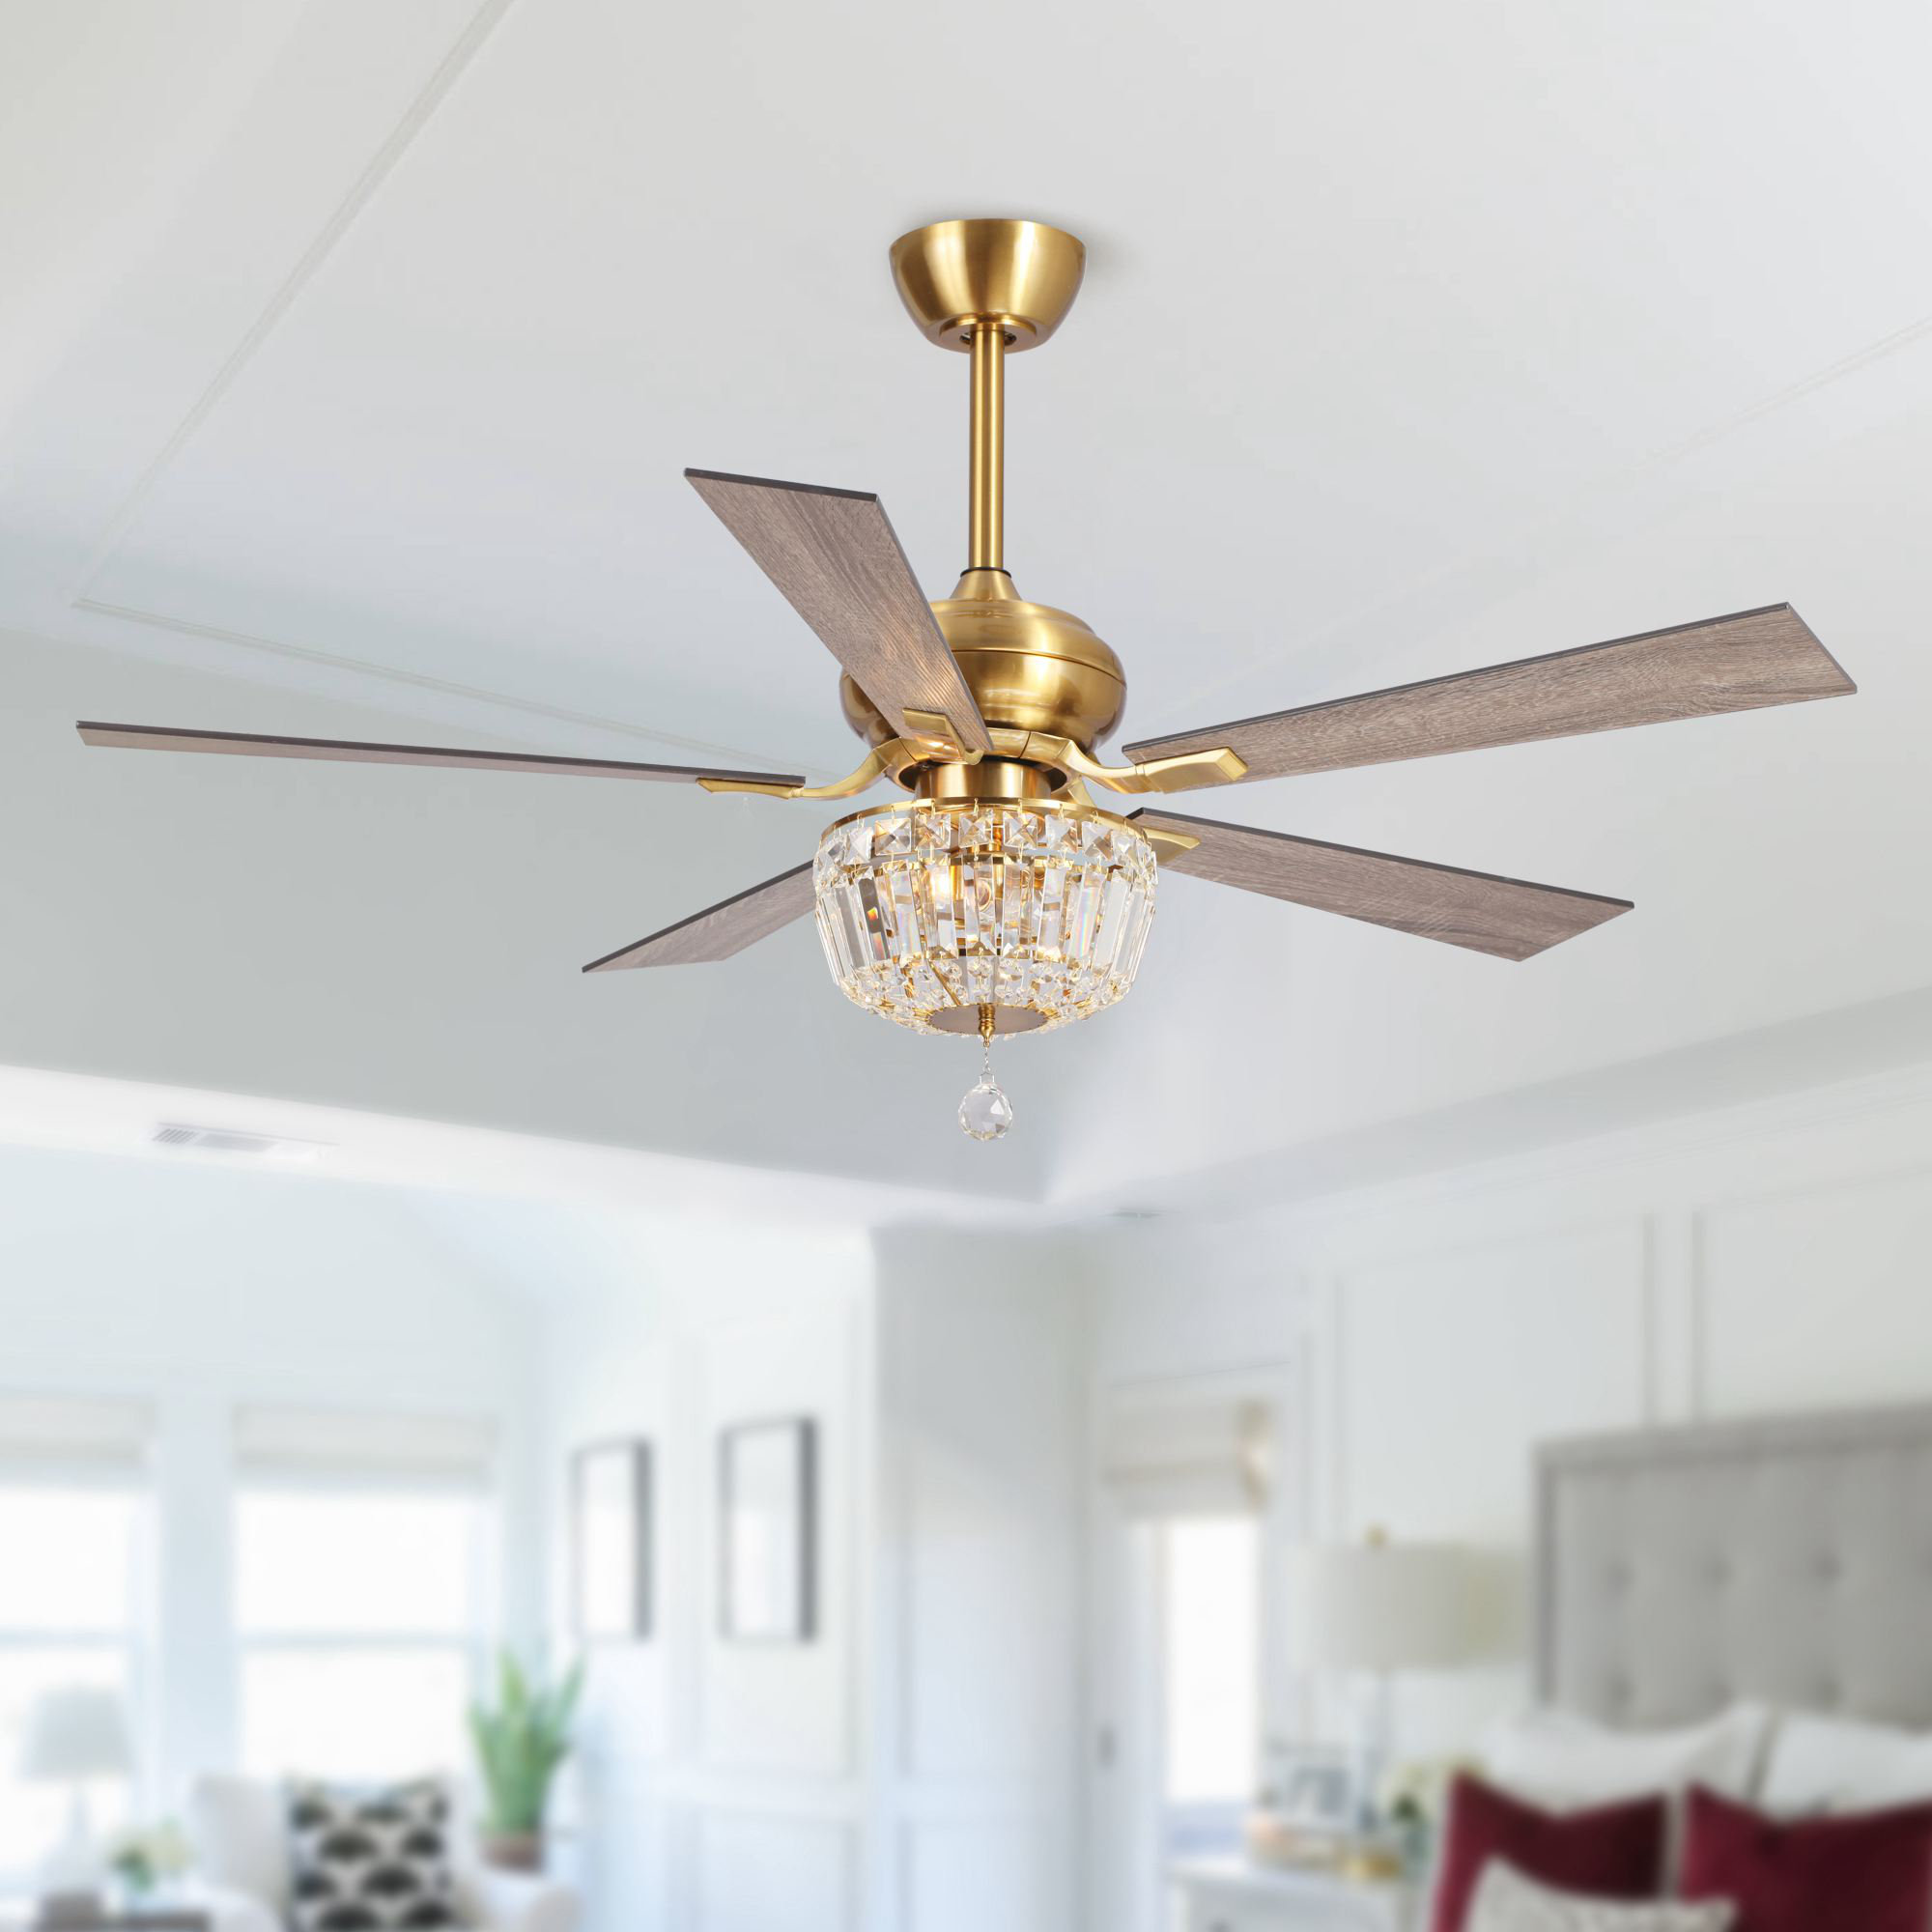 Ceiling Fans - Designer Looks, New Ceiling Fan Designs | Lamps Plus